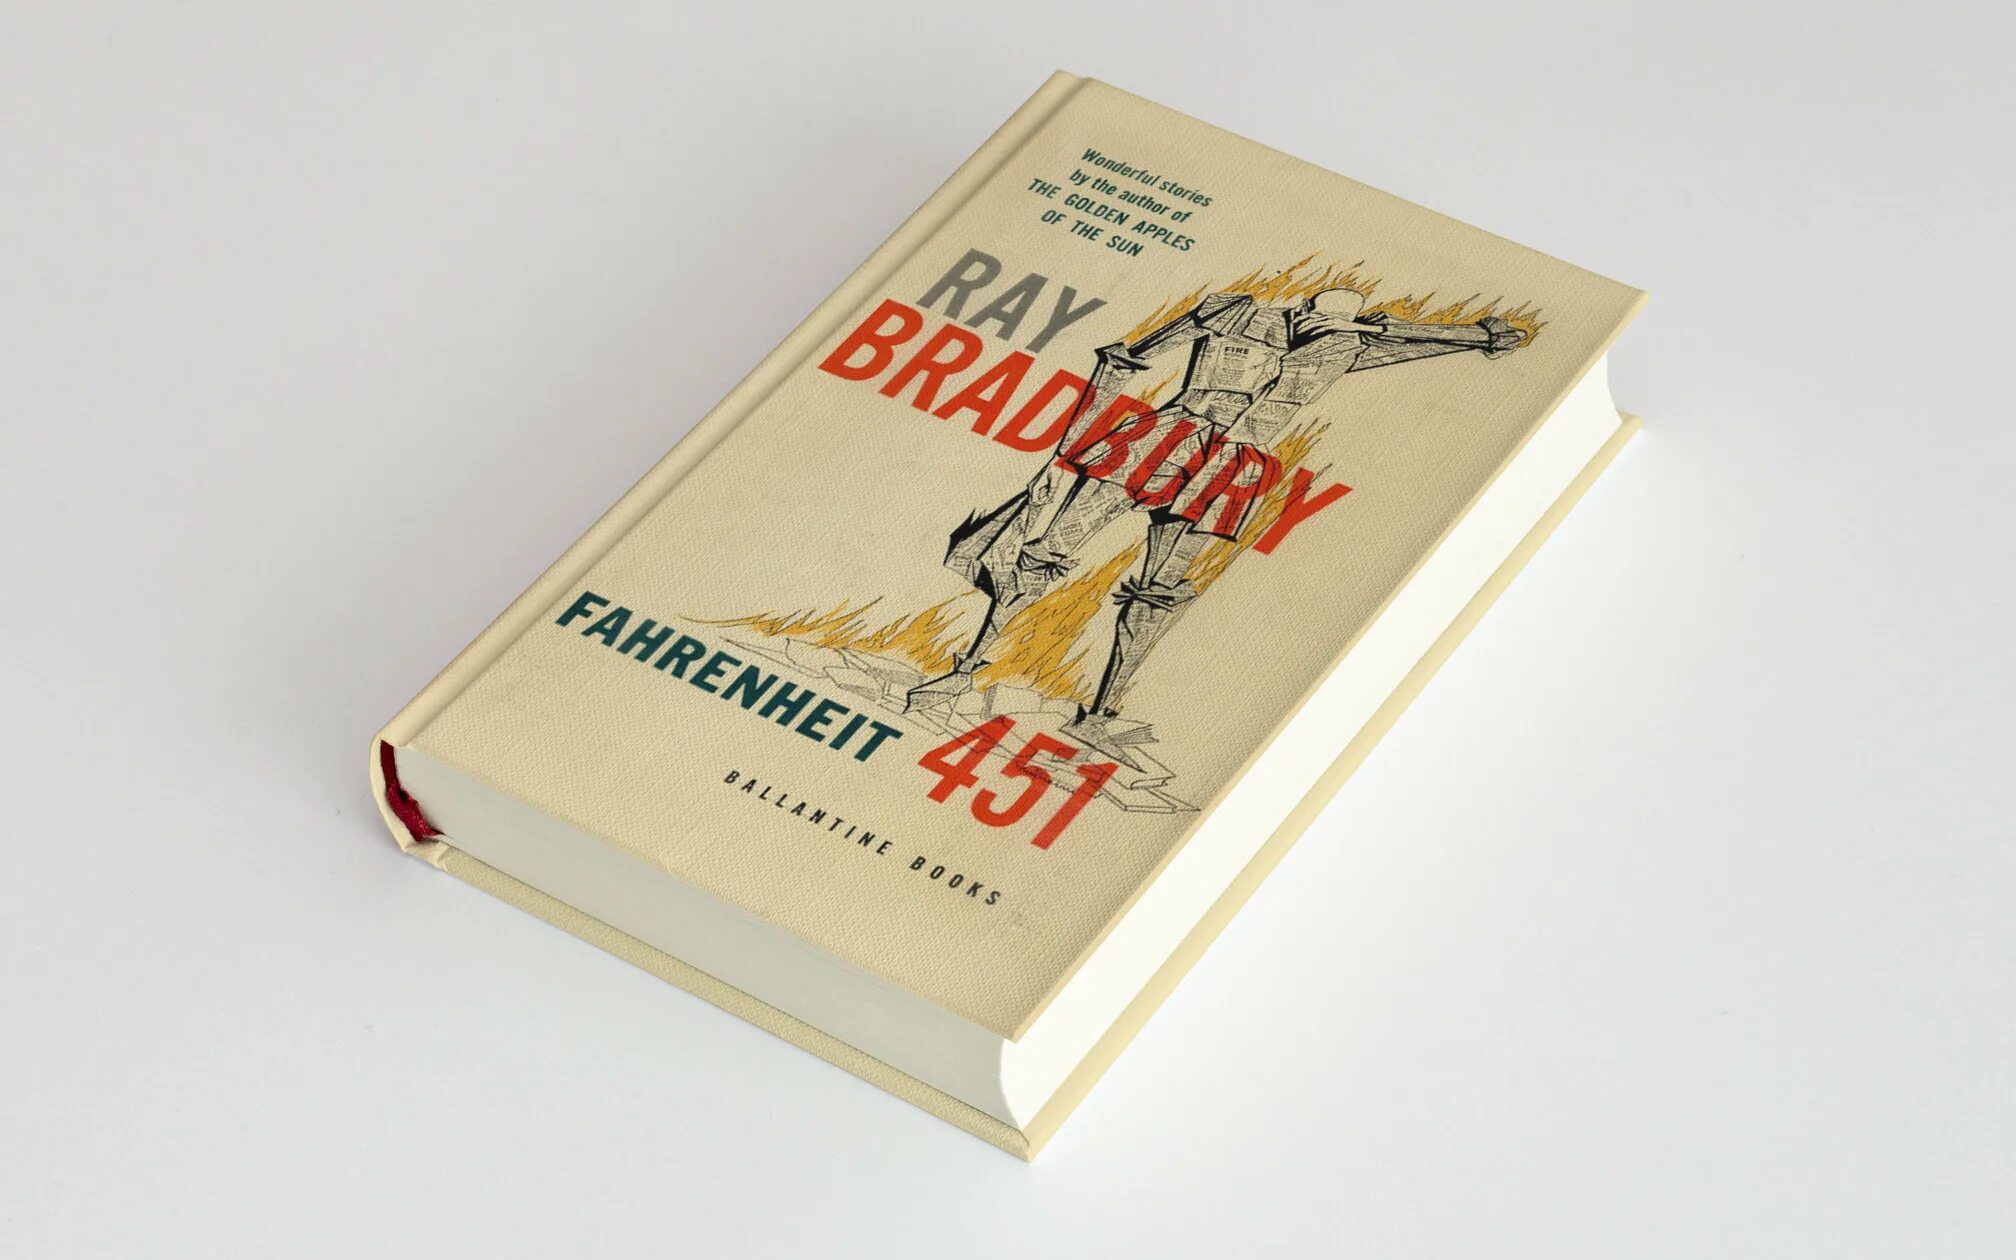 Вин брэдбери. Рэя Брэдбери 1953. Каникулы Рэй Брэдбери книжка. Обложка книги каникулы Брэдбери. Брэдбери лучшие книги.